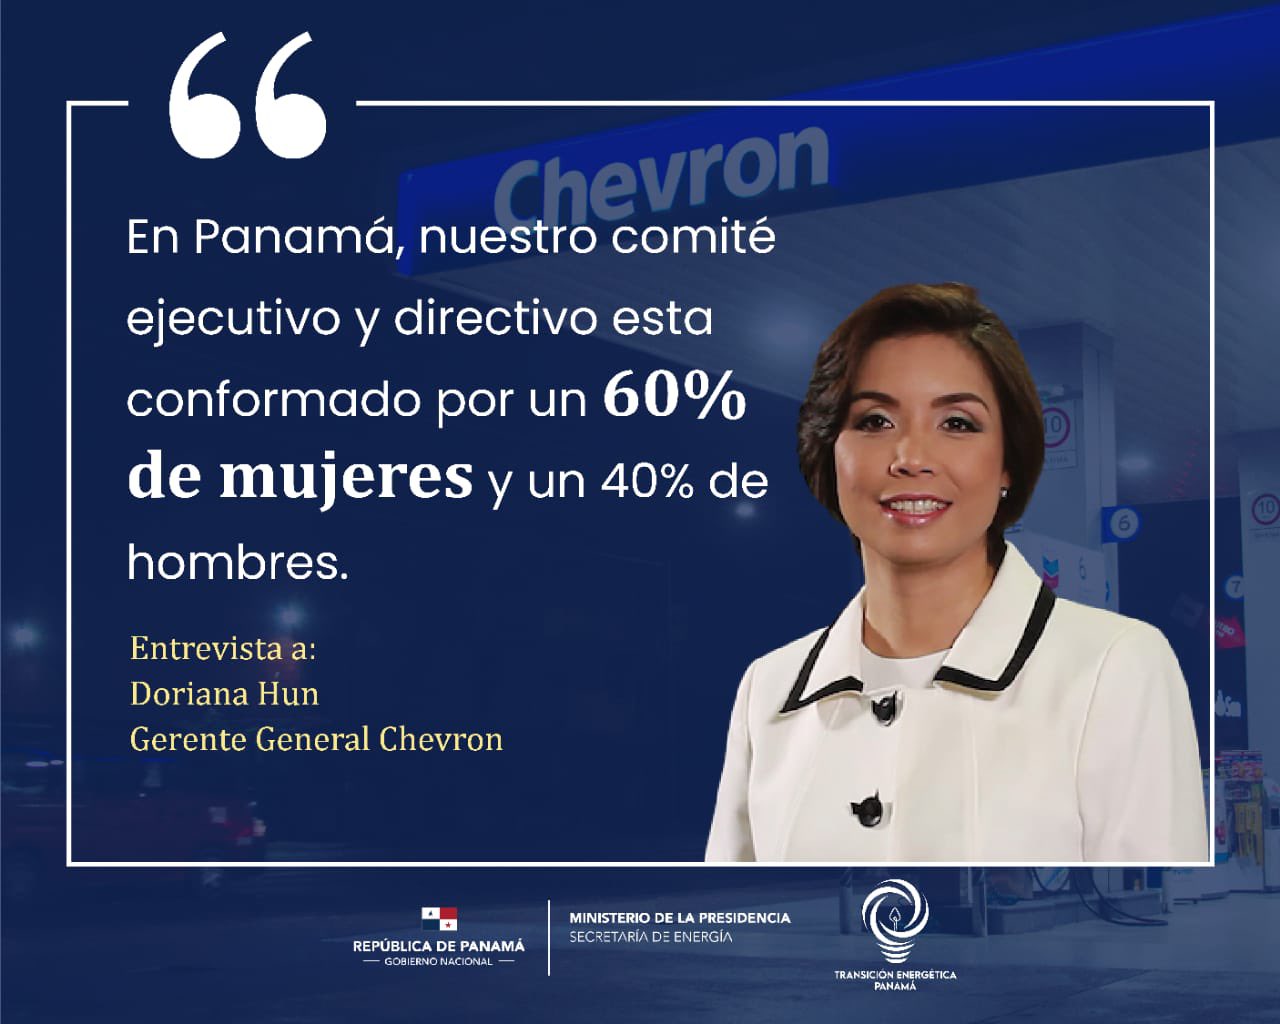 sal Continente Margaret Mitchell Rosilena Lindo on Twitter: "El Liderazgo de las Mujeres en el sector  energético de Panamá es clave para la salud empresarial. @dorianahun  gerente de Chevron es parte de quienes estan ampliando caminos